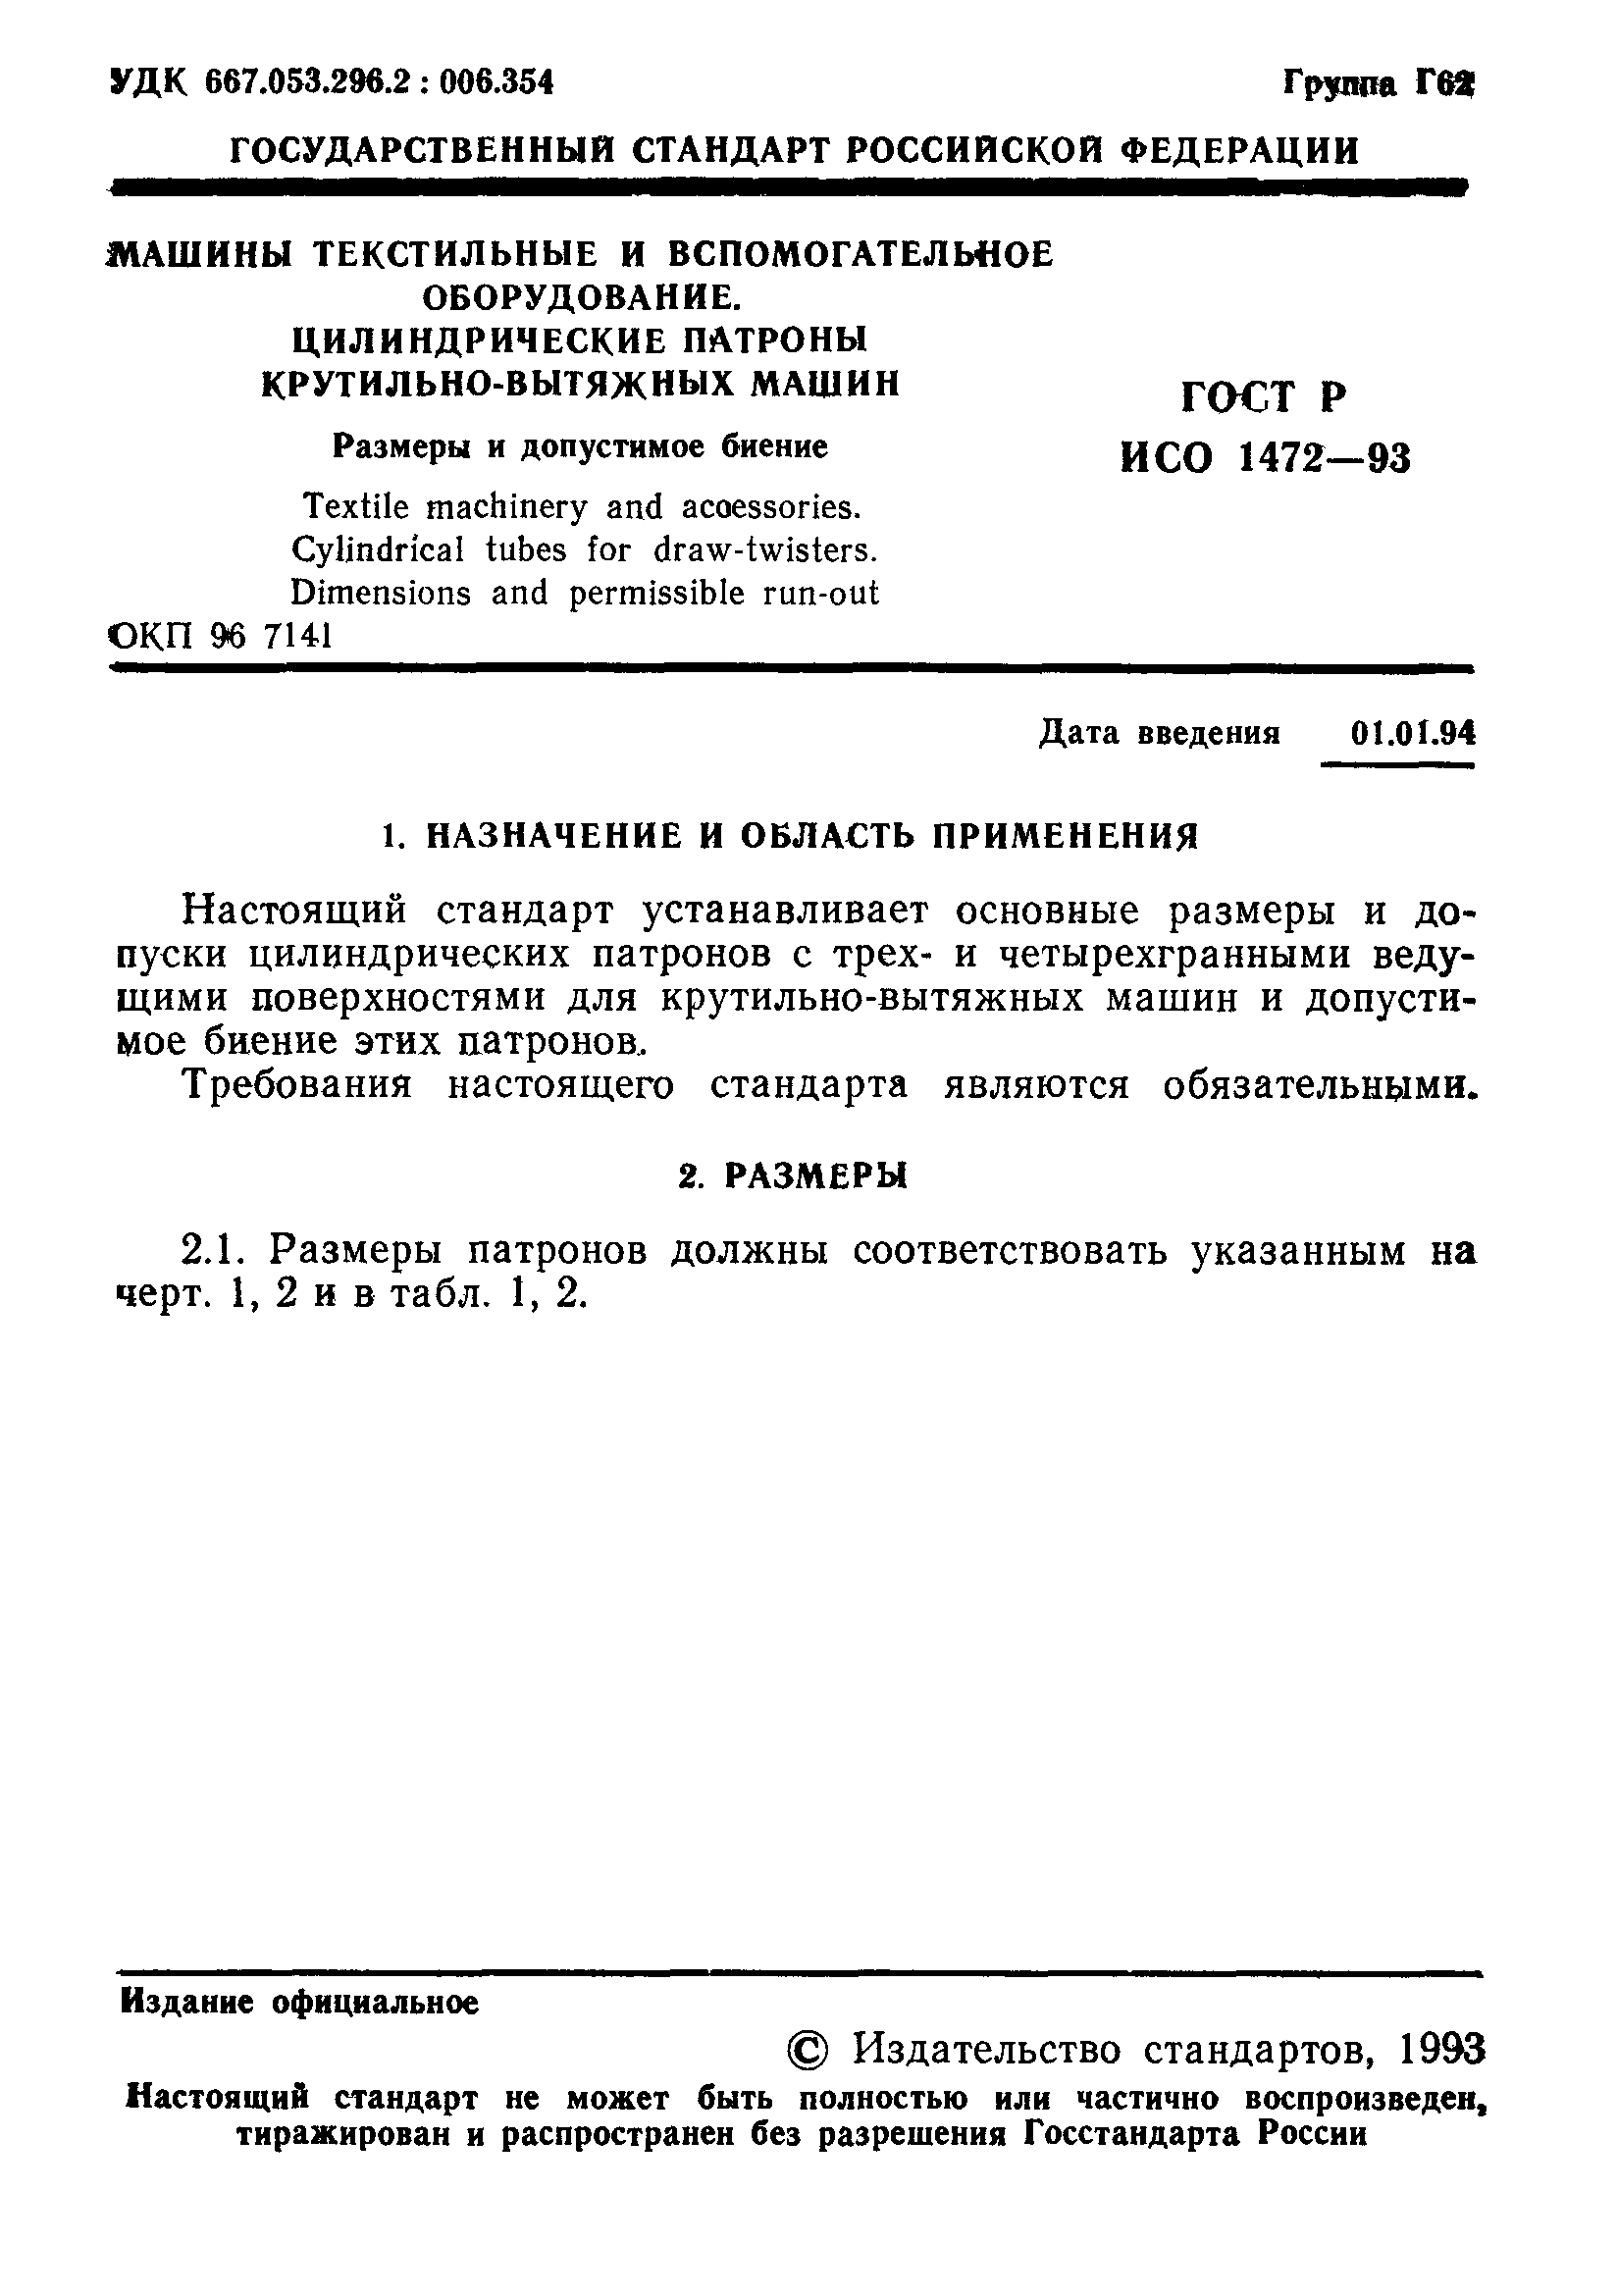 ГОСТ Р ИСО 1472-93